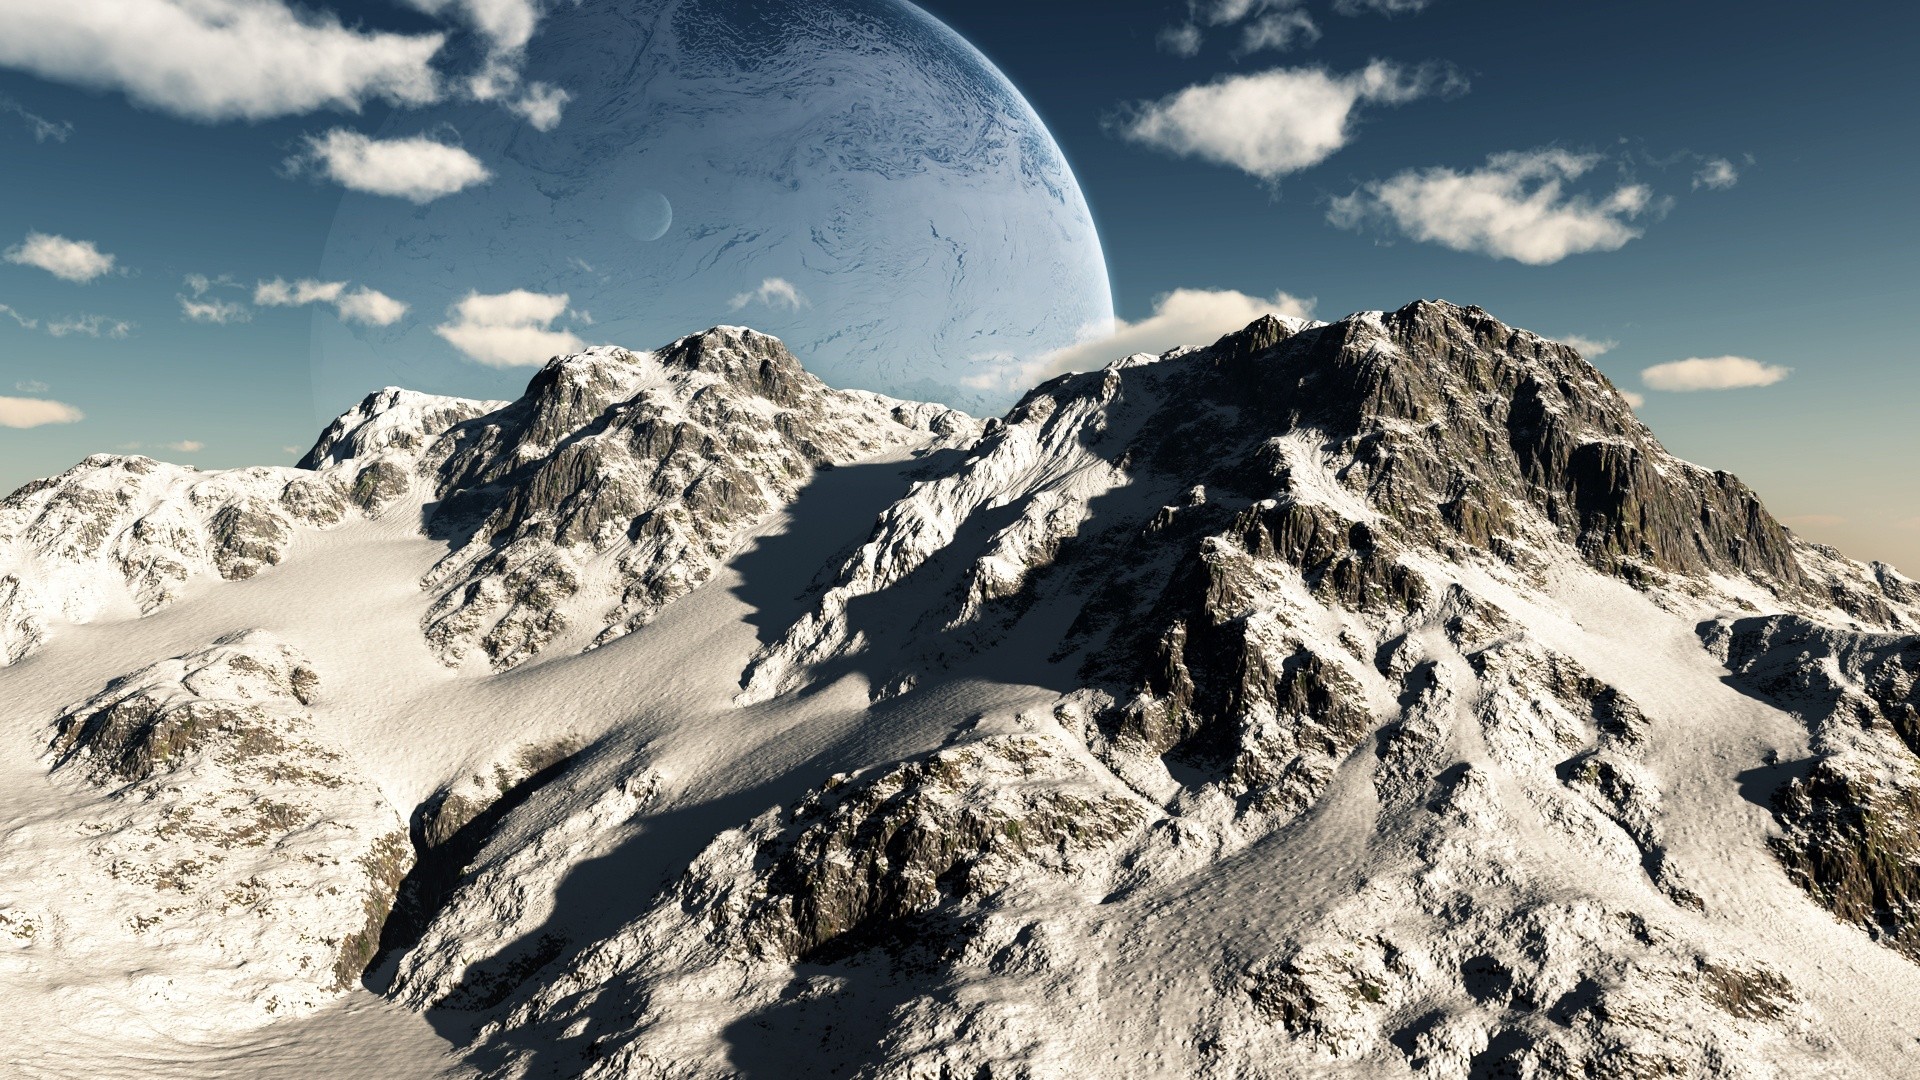 mountains, clouds, landscapes, Moon - desktop wallpaper